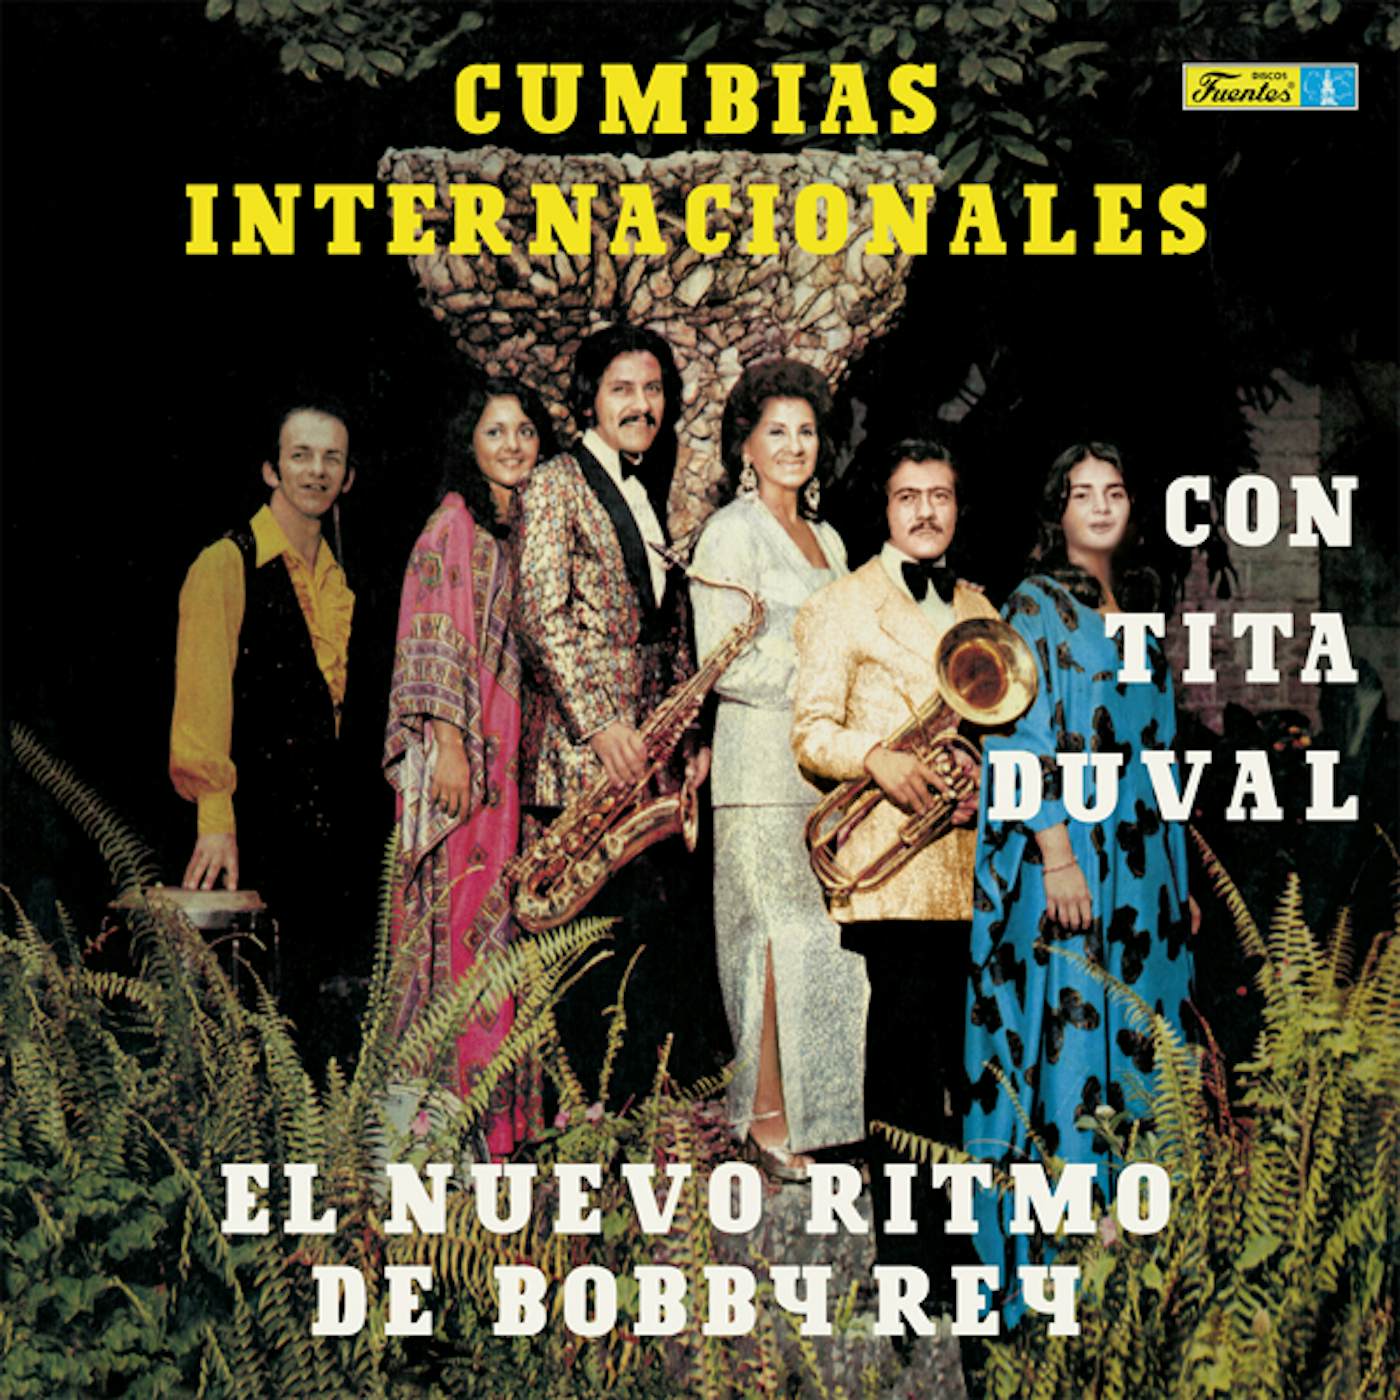 Tita Duval & Bobby Rey CUMBIAS INTERNACIONALES Vinyl Record